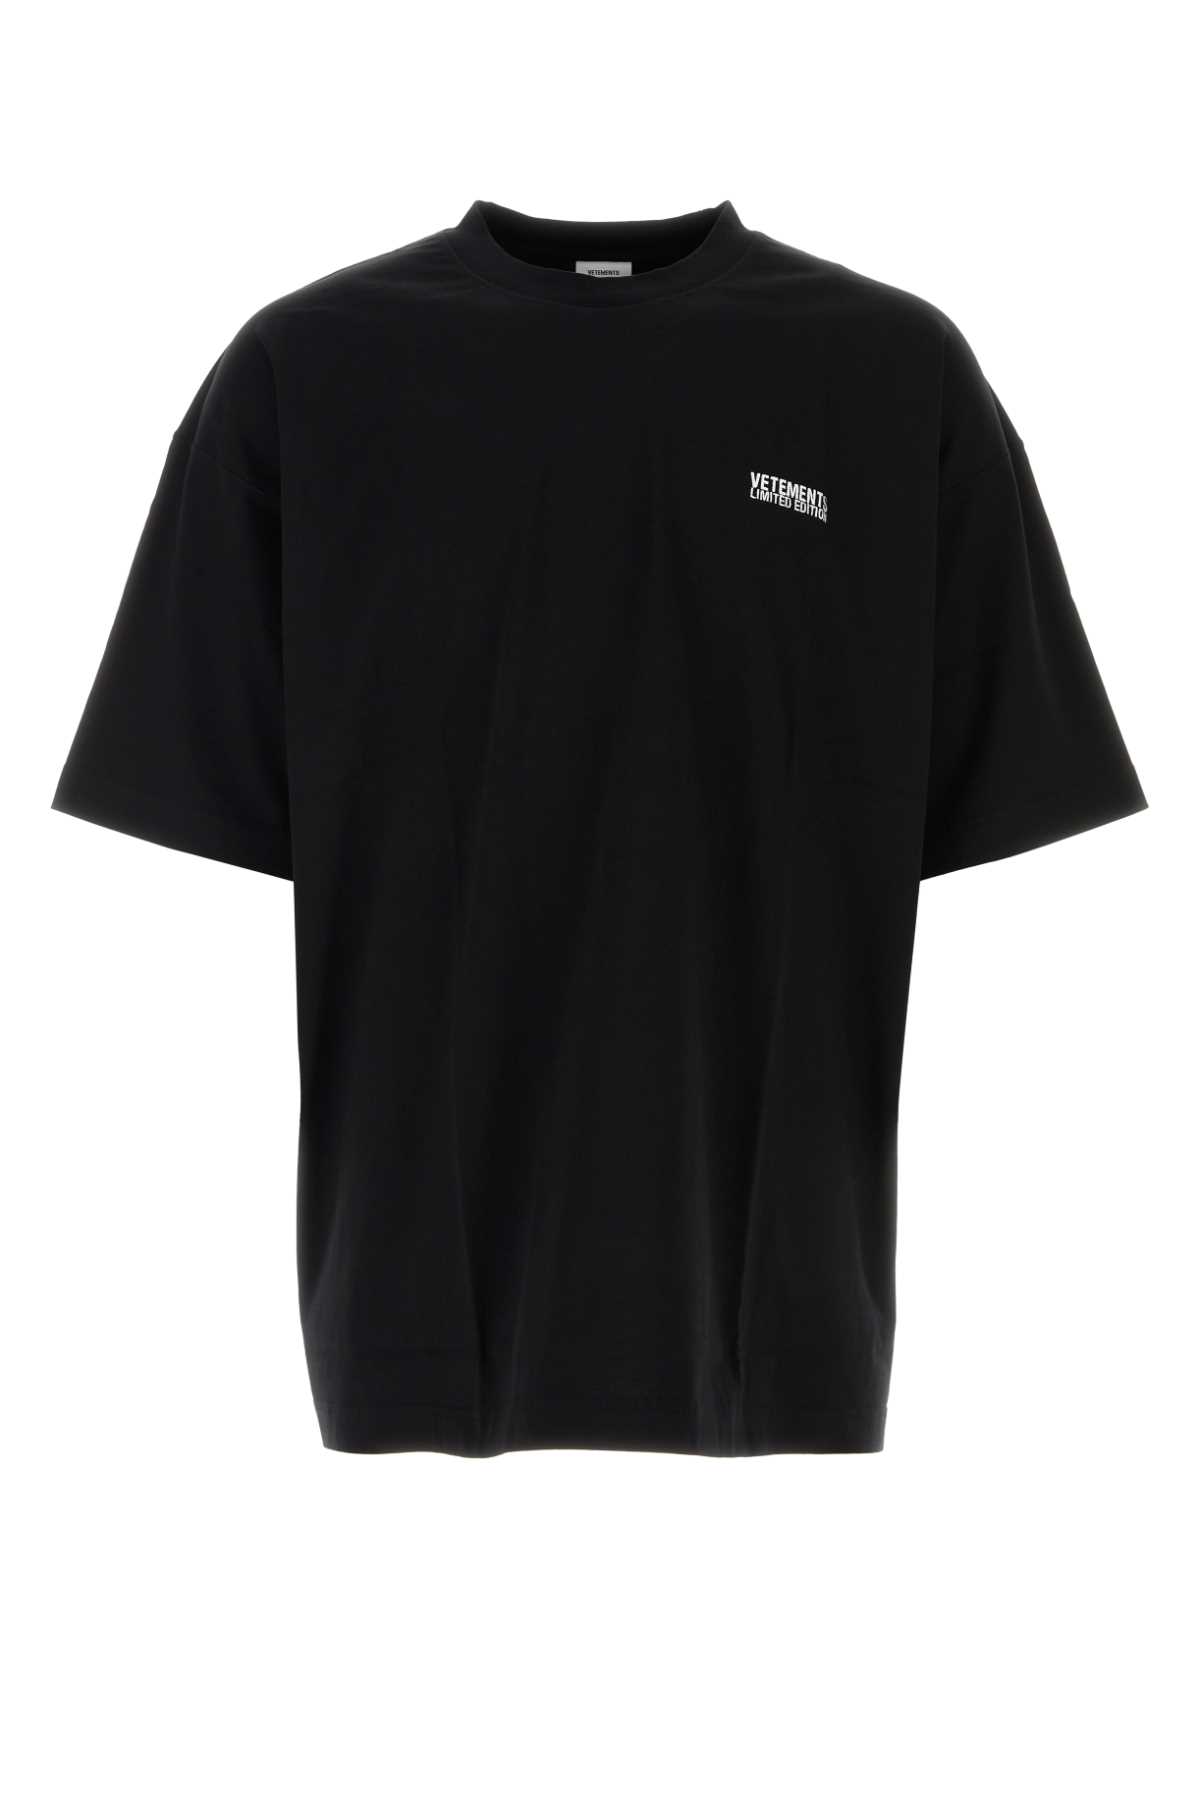 Shop Vetements Black Cotton T-shirt